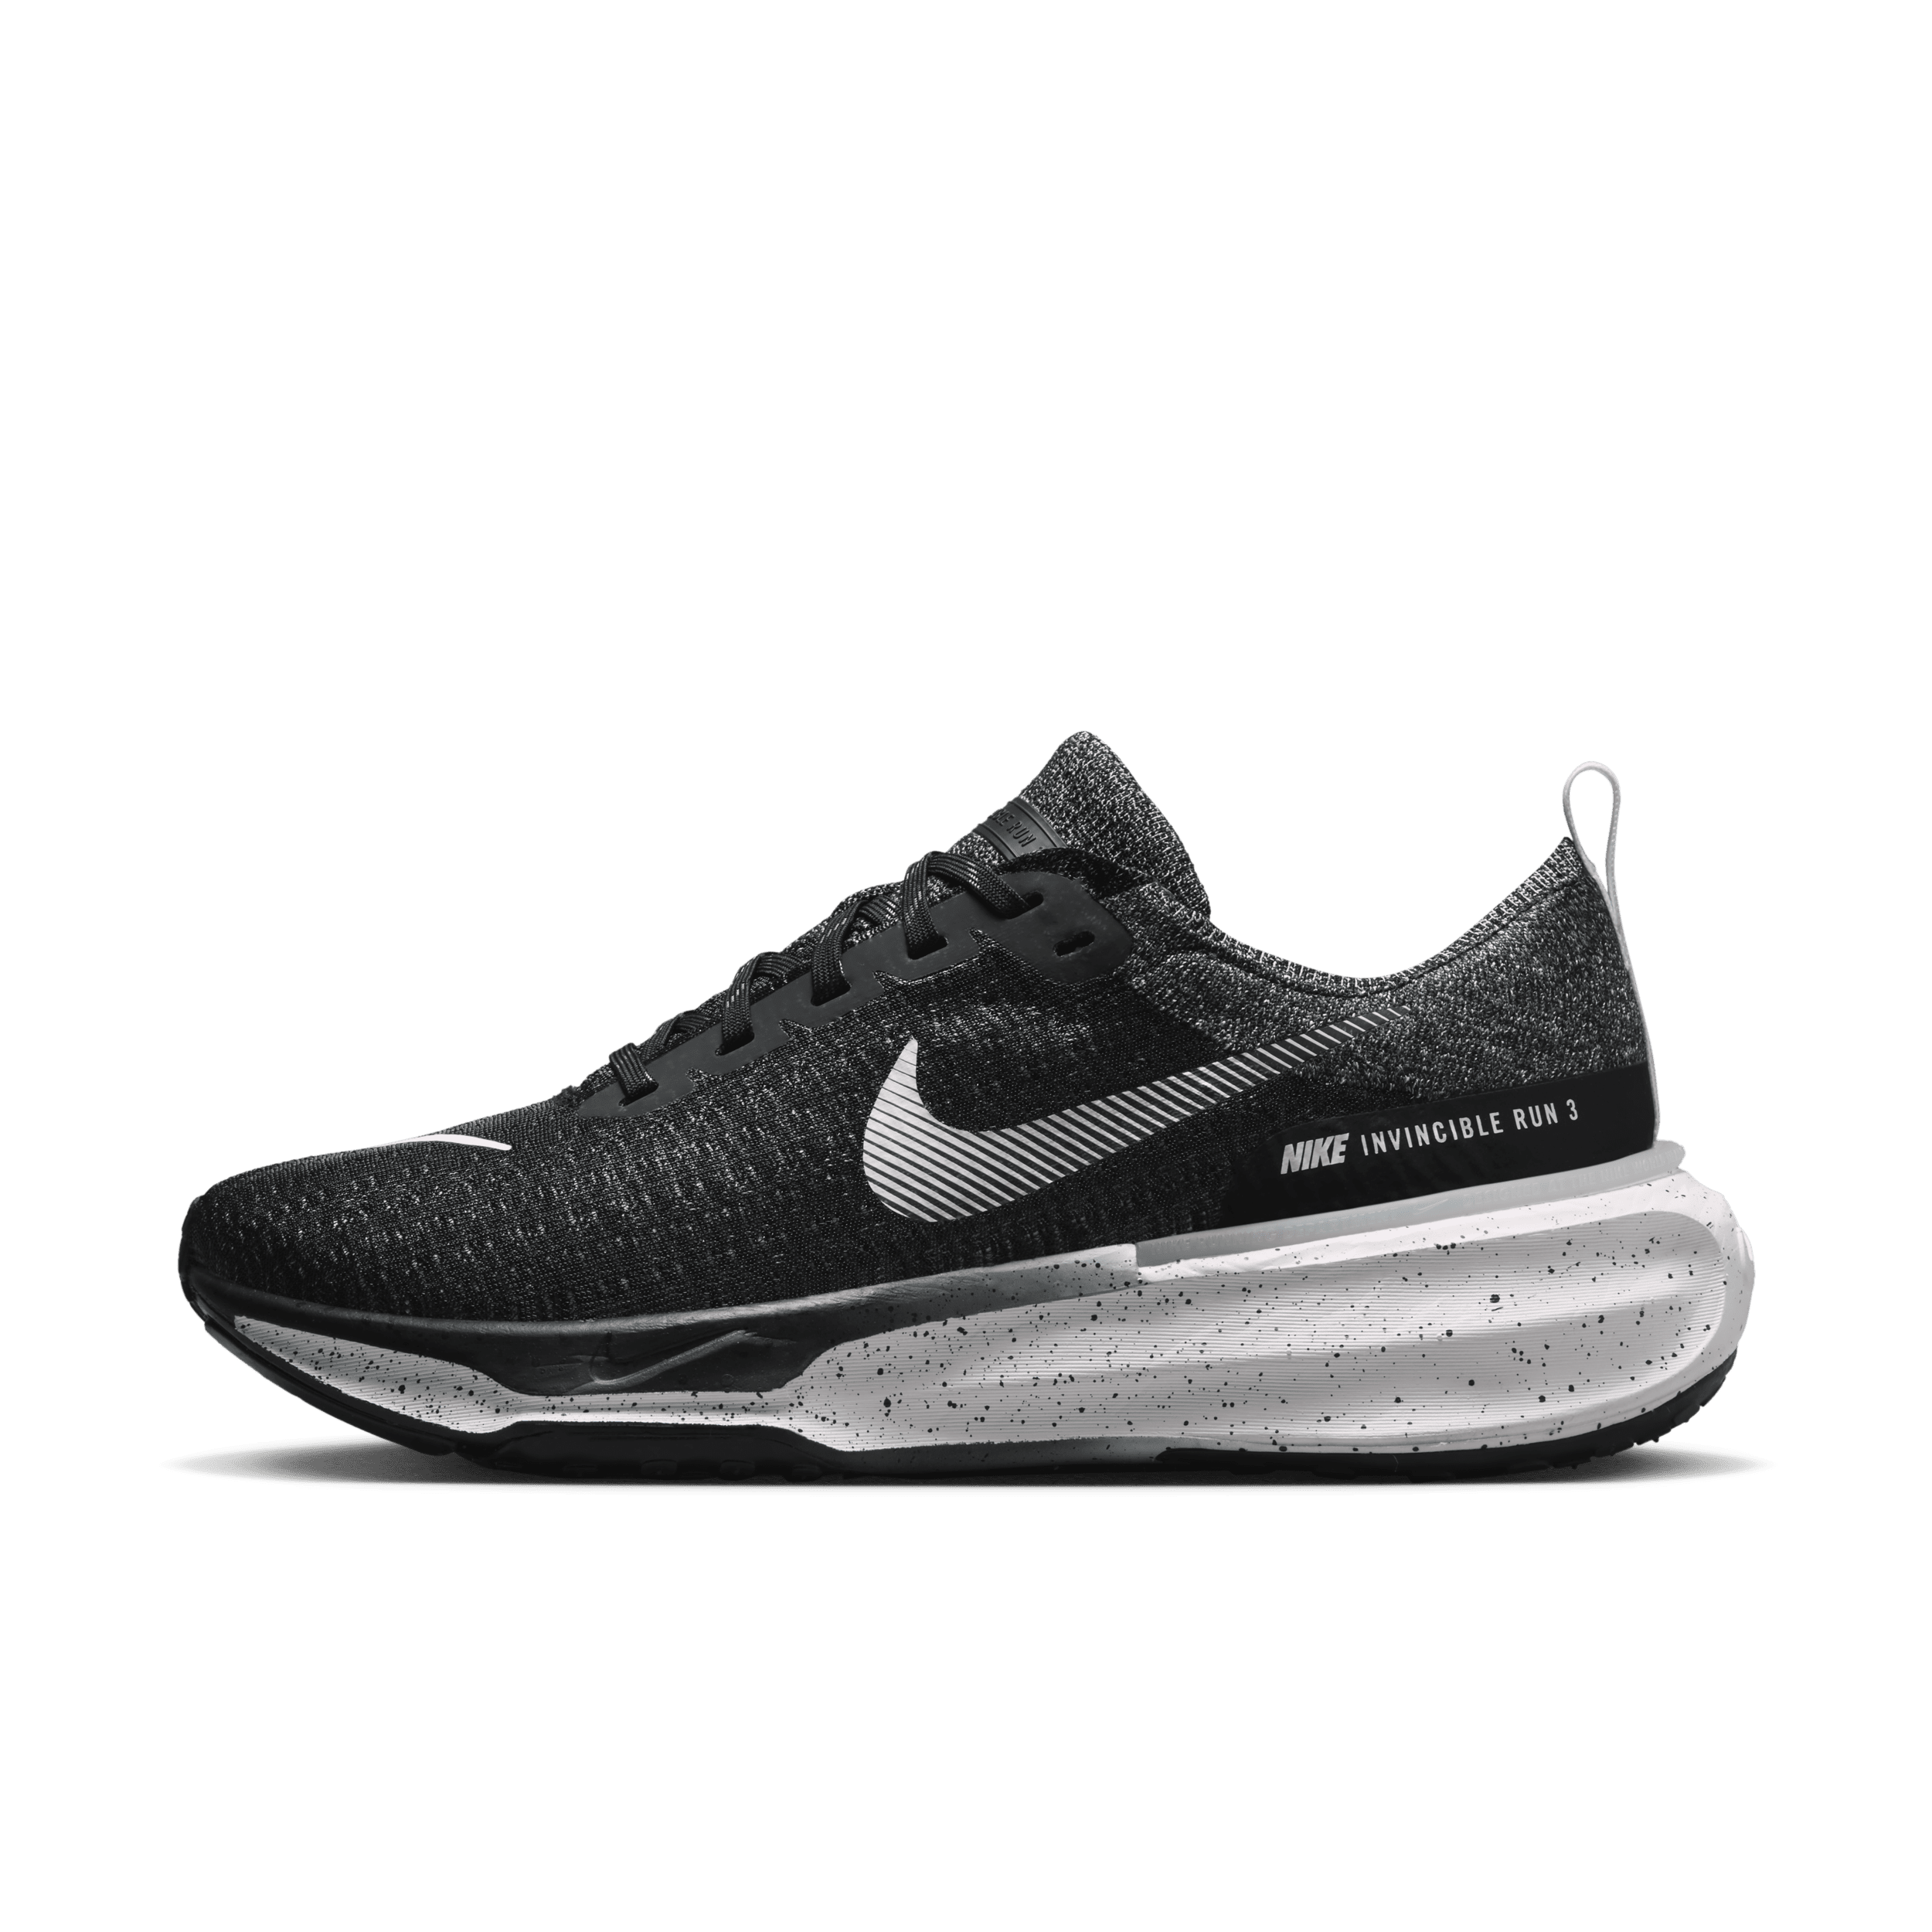 Nike Invincible 3 Zapatillas de running para asfalto - Hombre - Negro